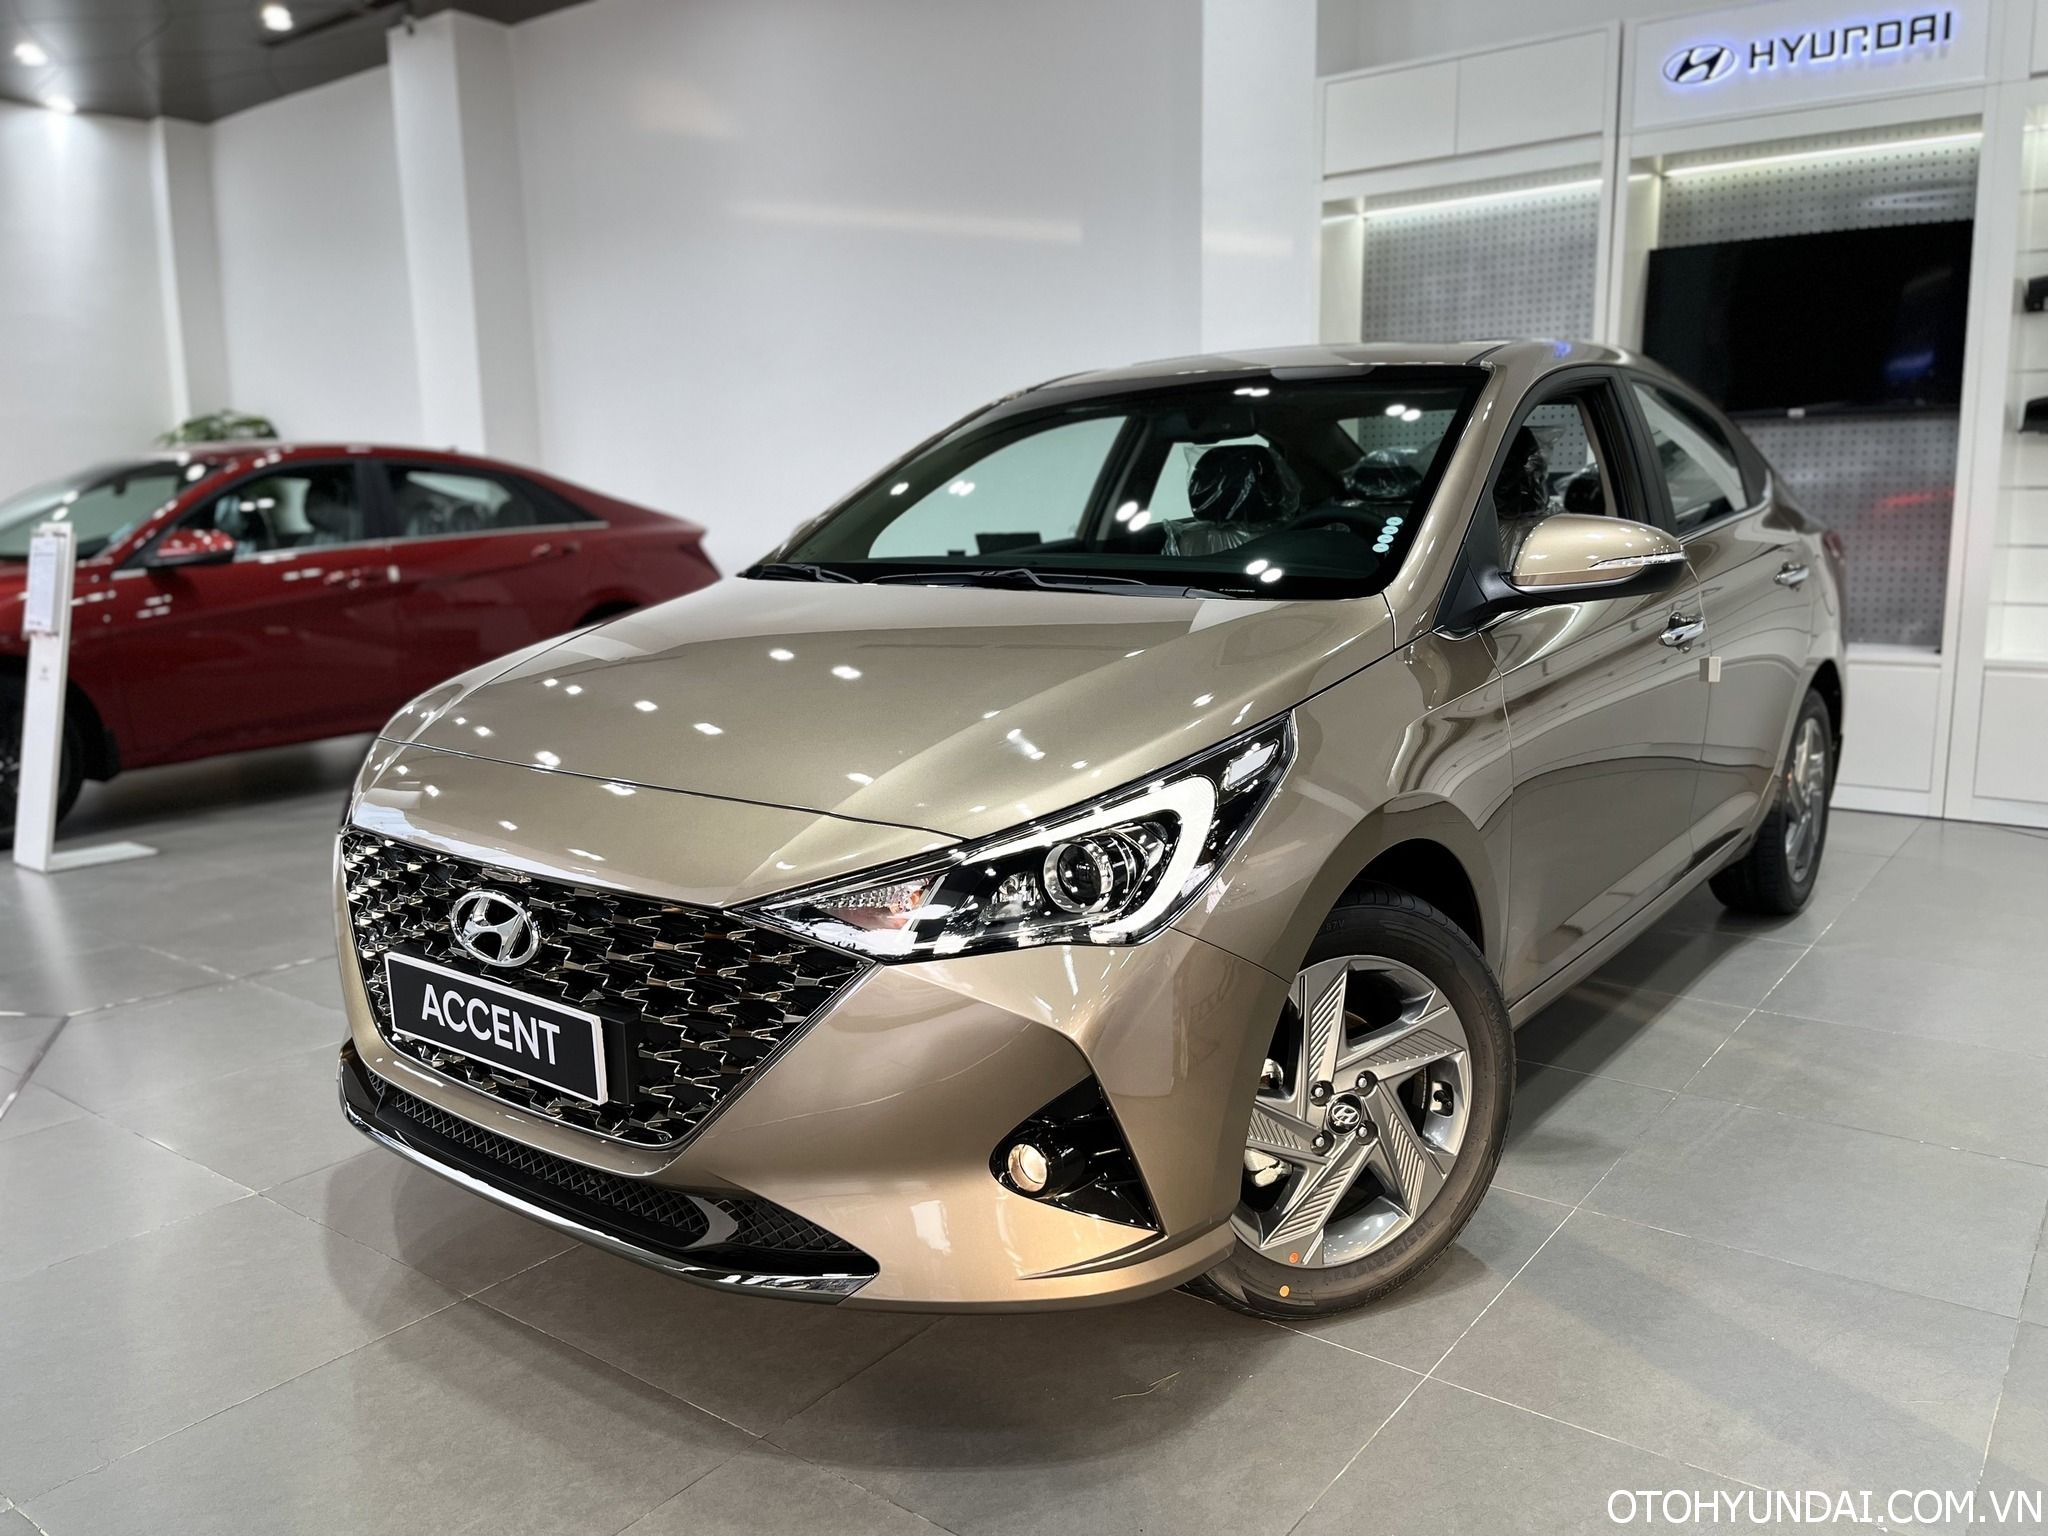 Hyundai Accent màu Vàng cát | Ngoại thất xe hyundai accent màu vàng cát